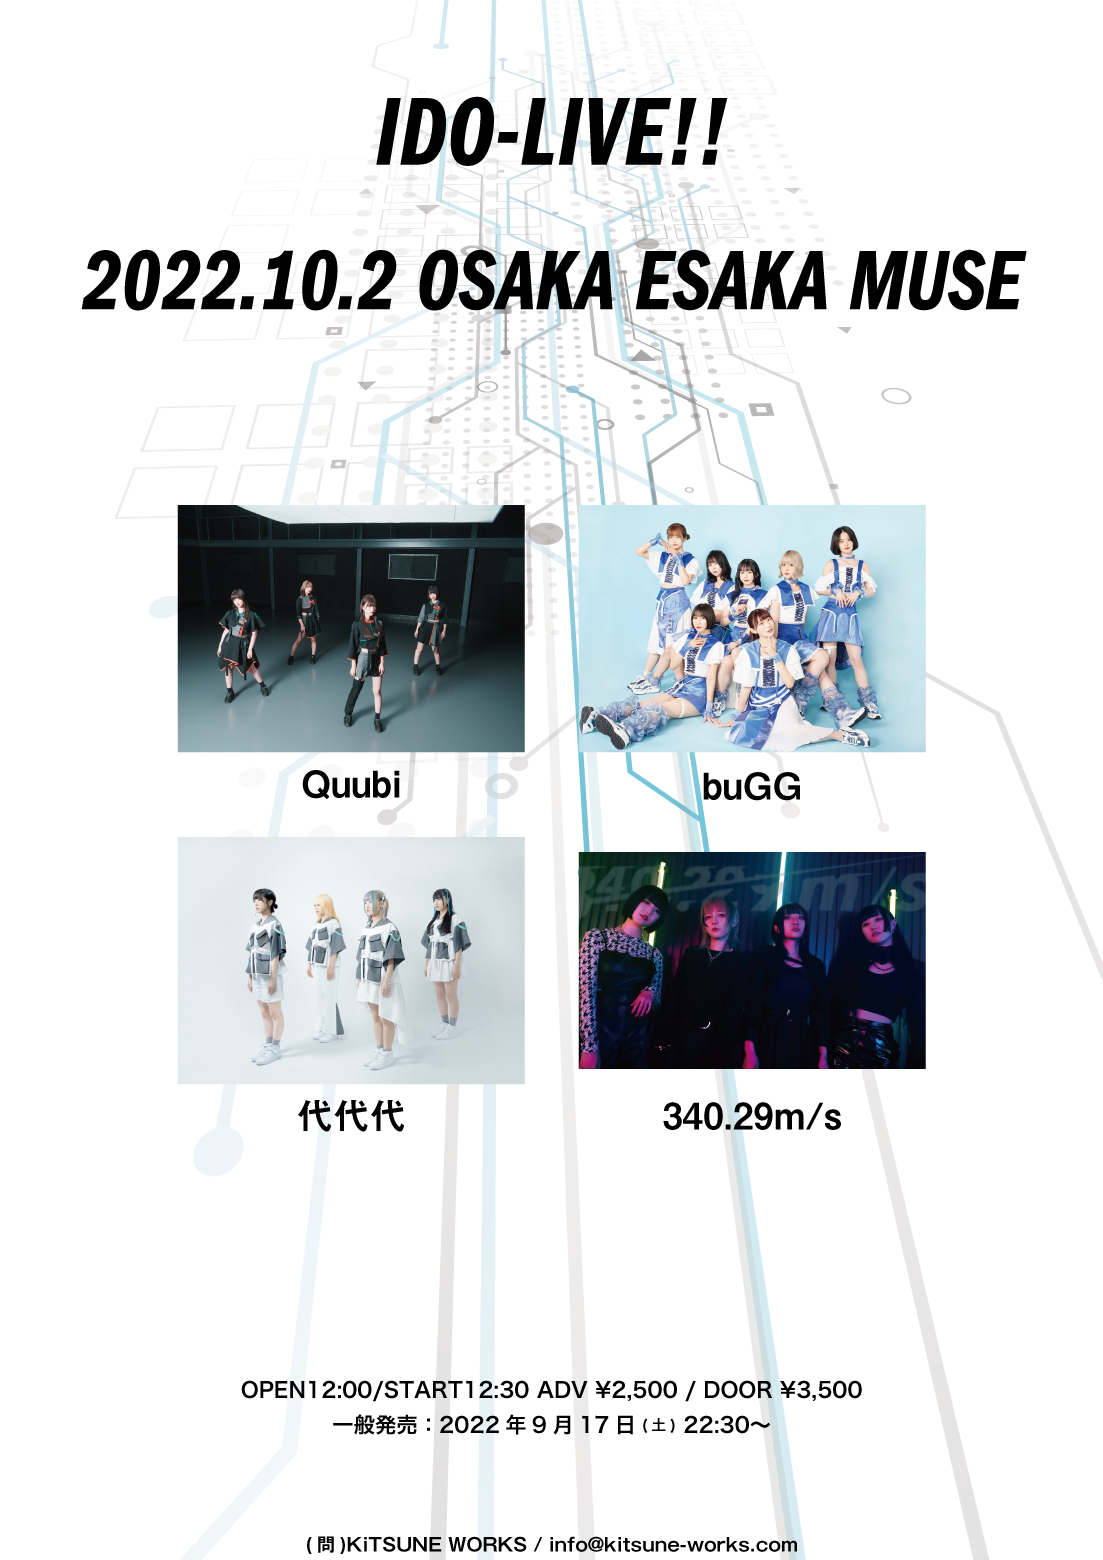 【10/2】IDO-LIVE!! at ESAKA MUSE